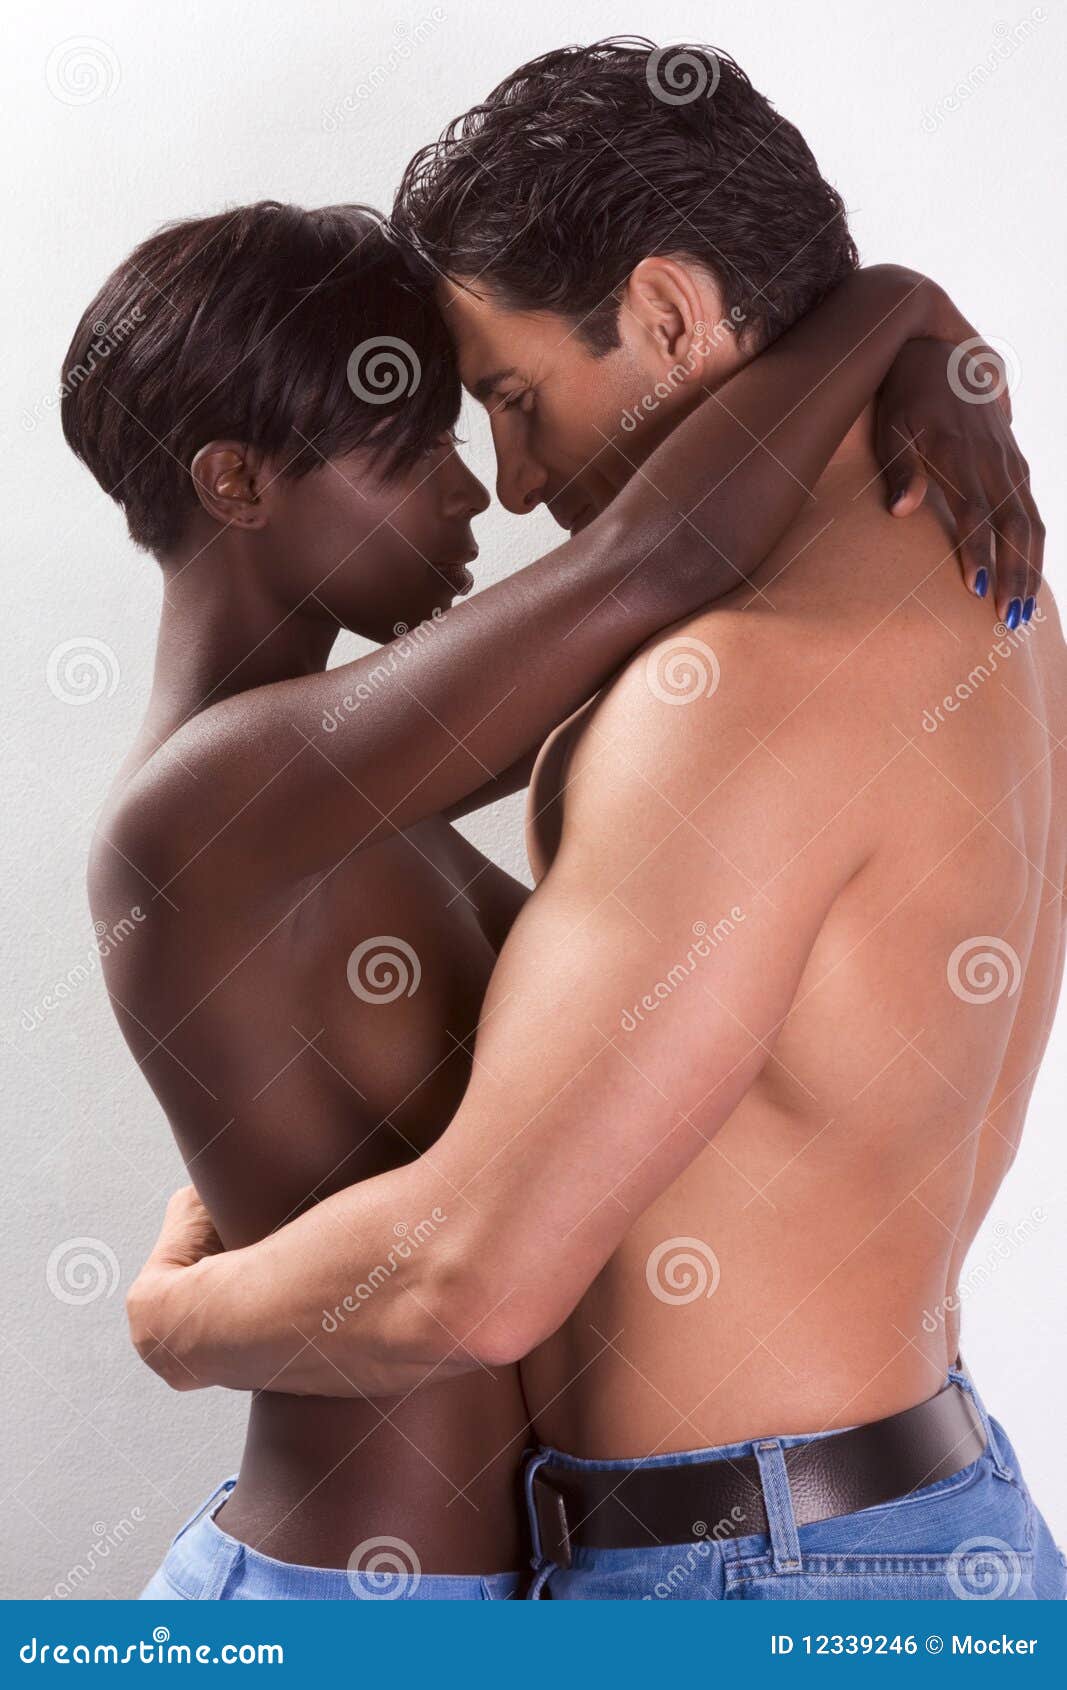 Nude ebony women white men